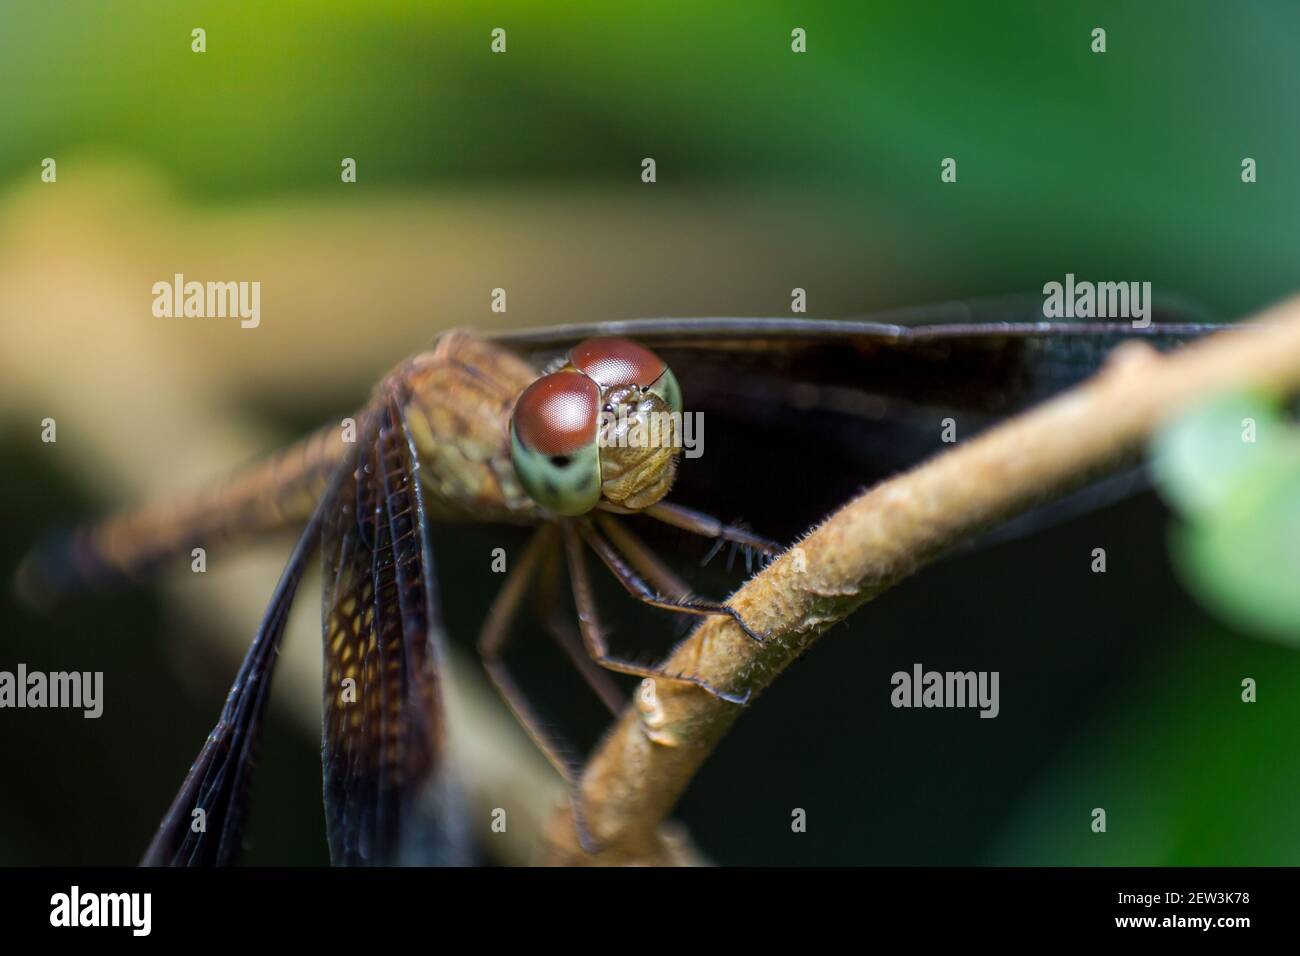 Belles photos de la nature libellule Afficher les détails de la tête et les yeux sont étonnants Banque D'Images